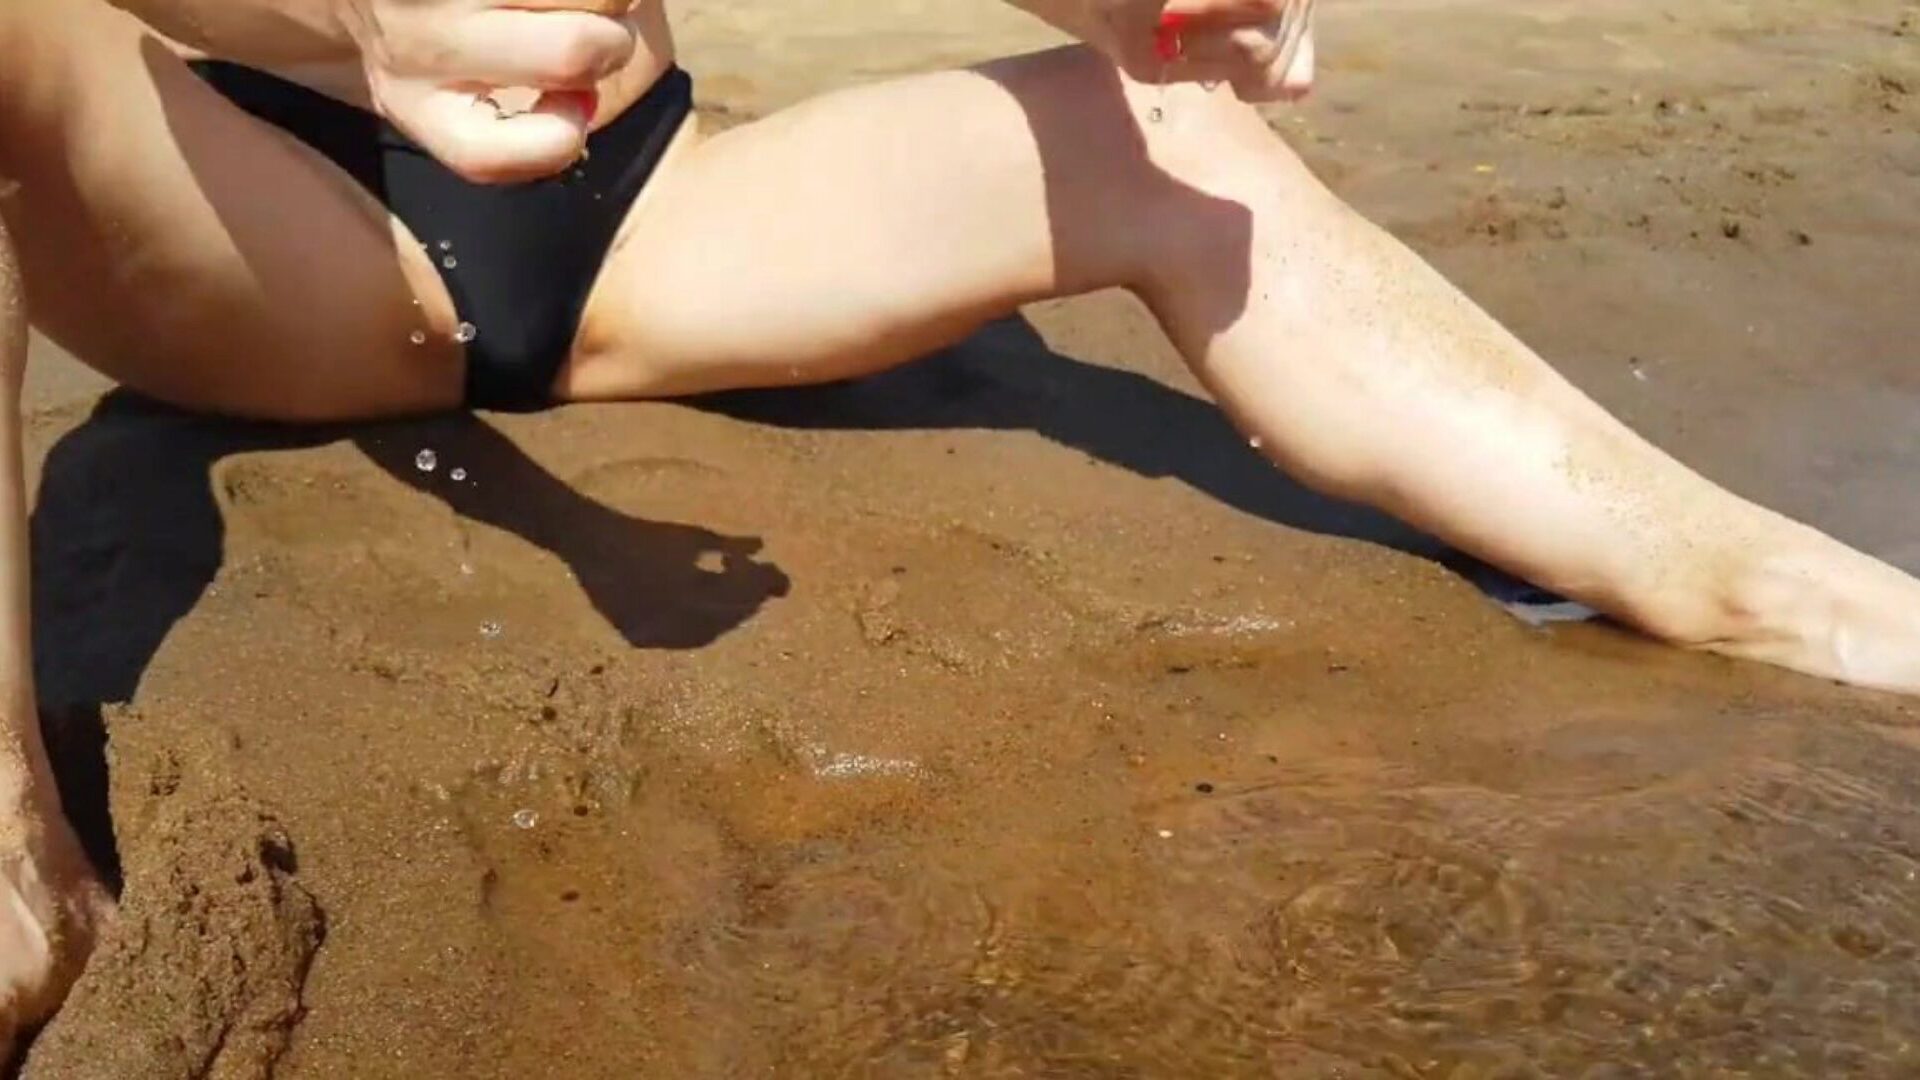 подросток дрочит на общественном пляже и получает настоящий крутой оргазм - tight pussy playskitty ultra hd 4k